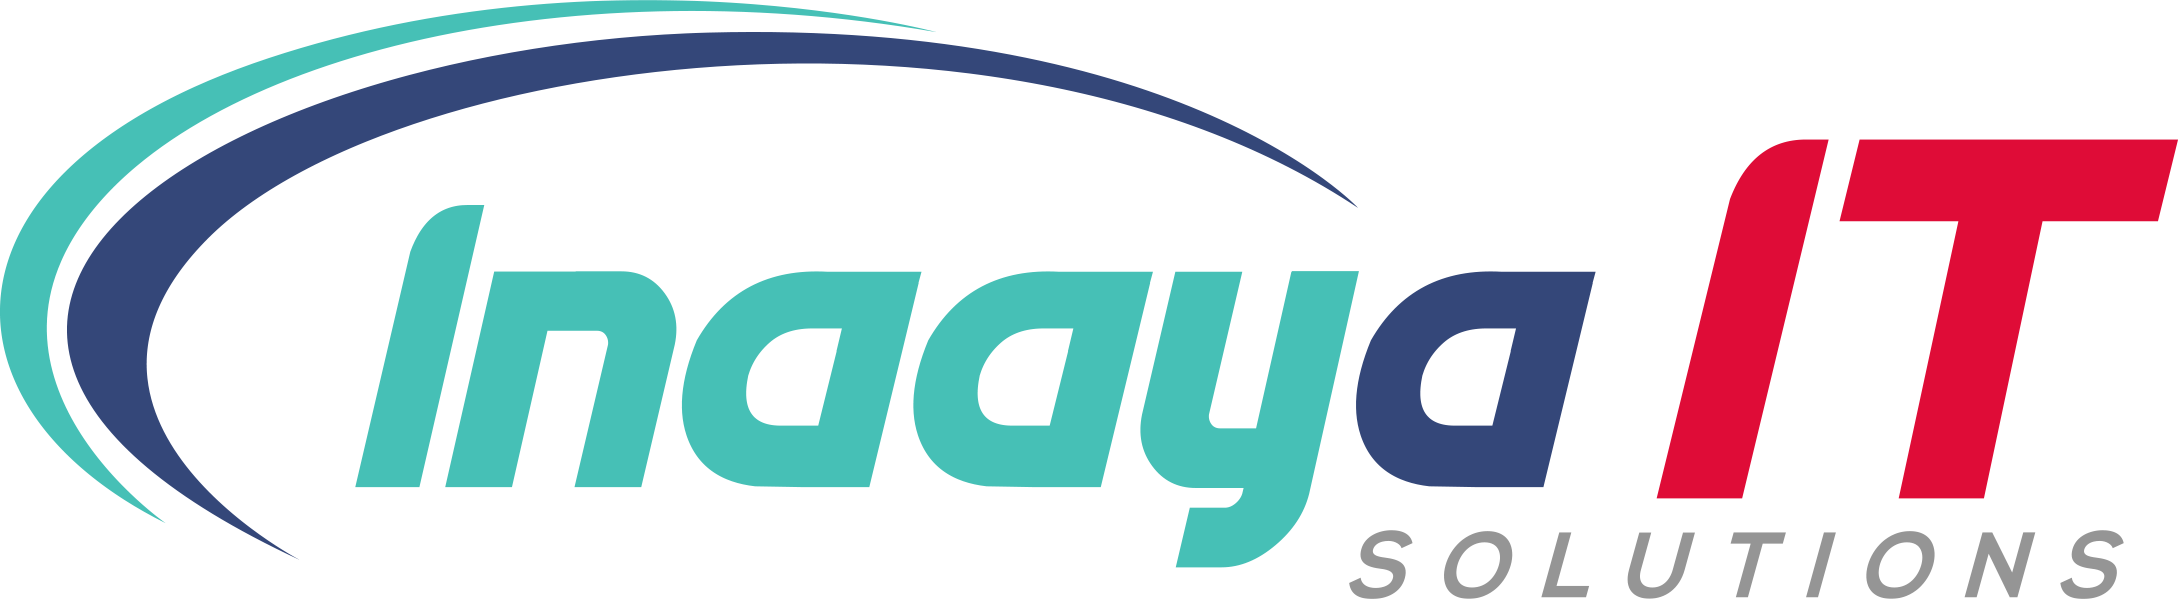 INAAYA IT SOLUTIONS-logo